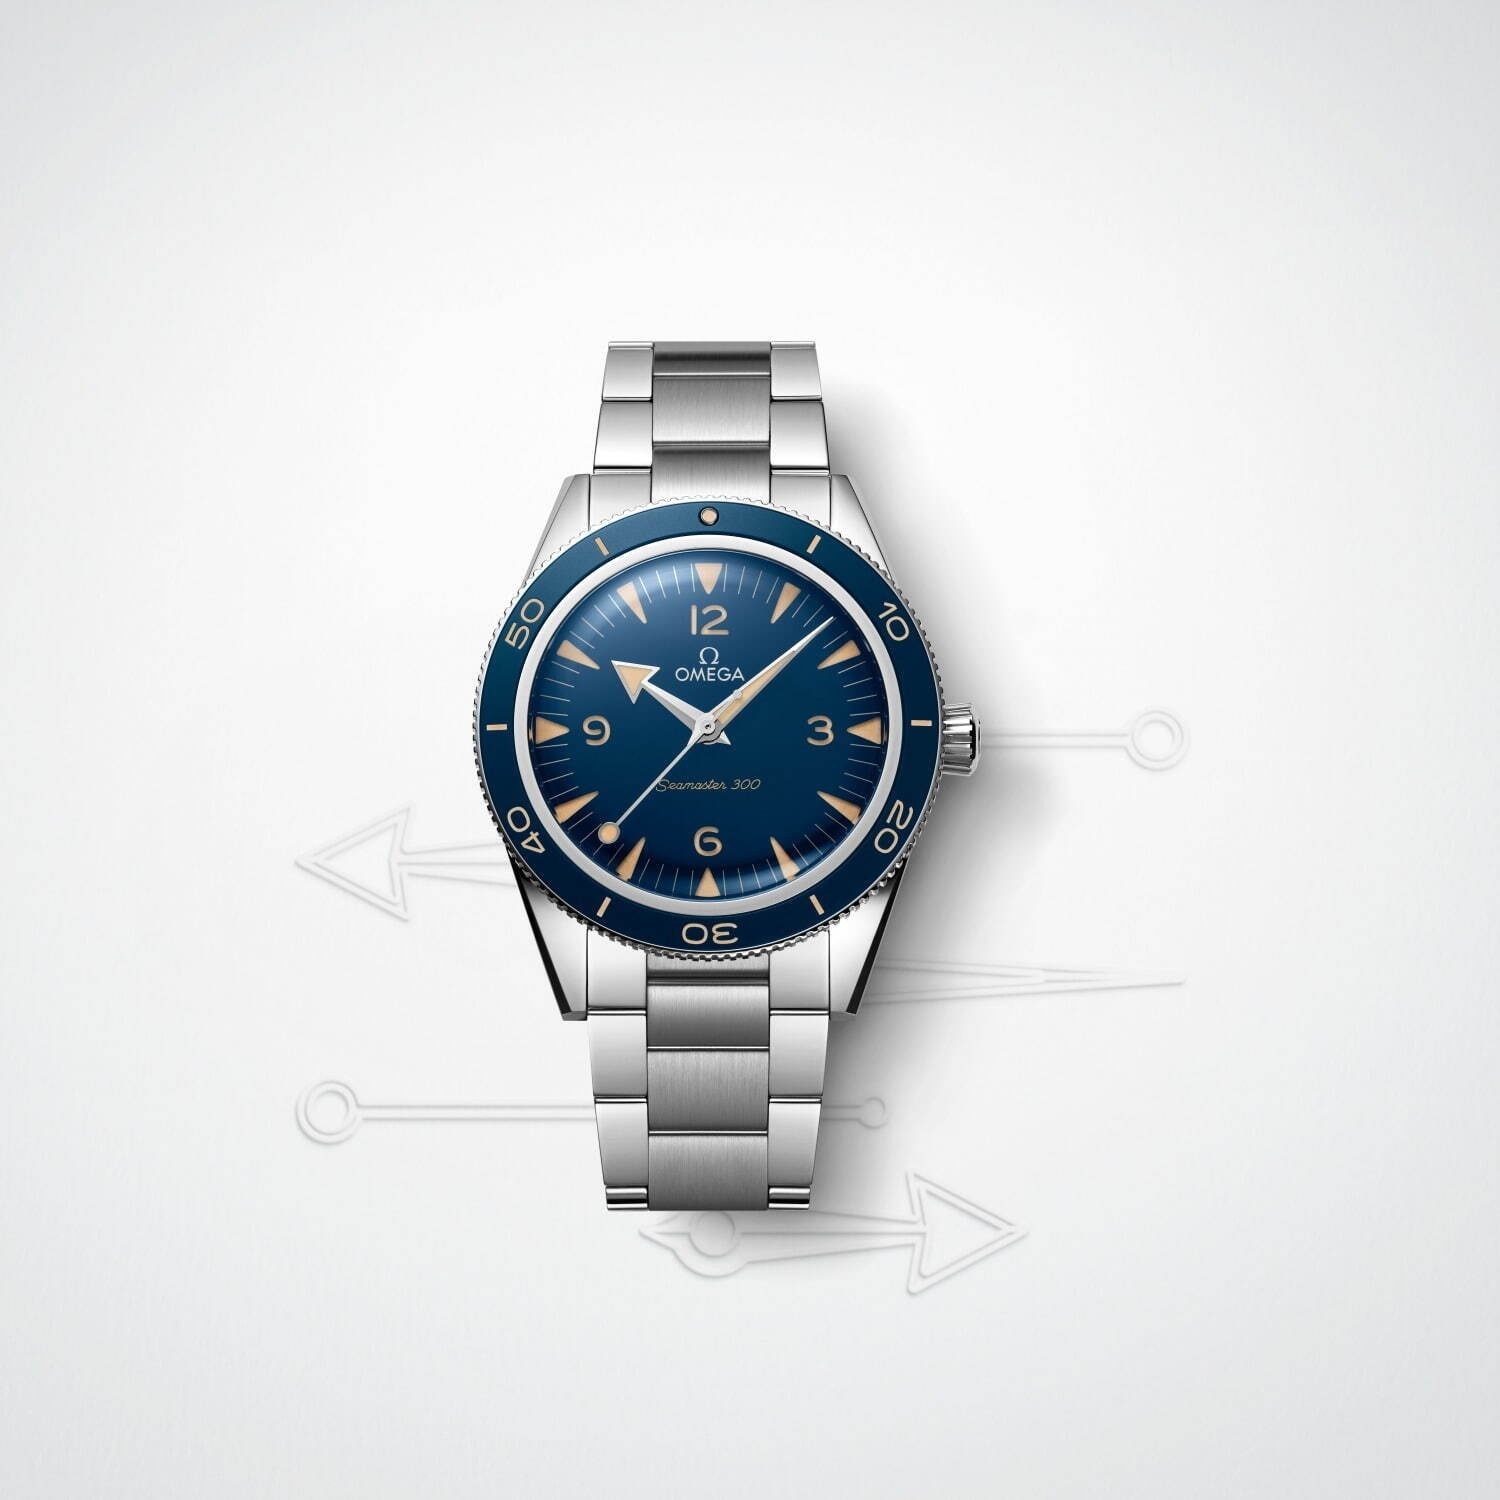 日本全国送料無料 SEWORトップ高級ブランドファッションバレル型革時計メンズ自動機械式時計